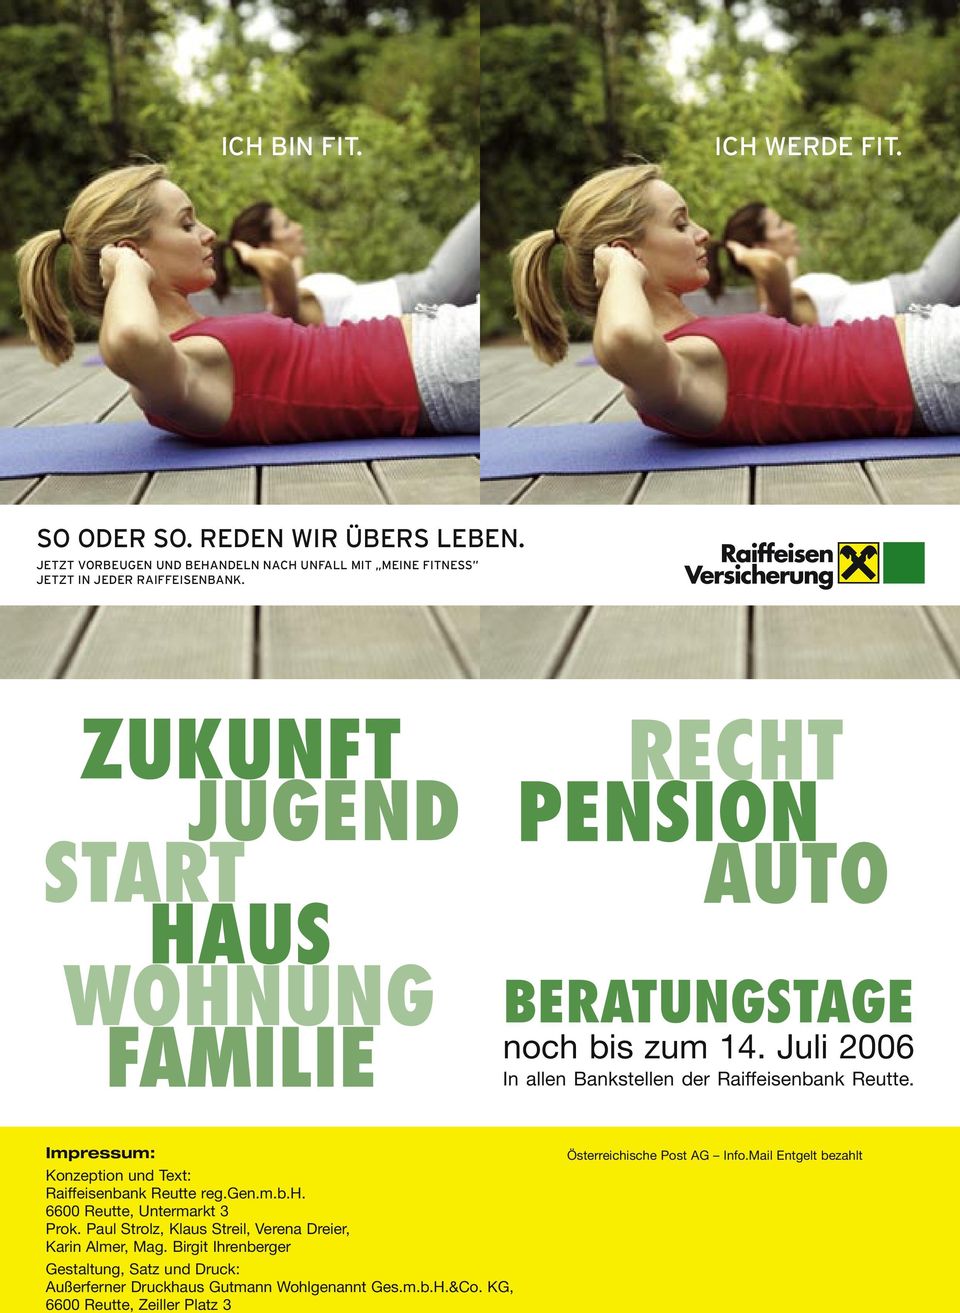 Juli 2006 In allen Bankstellen der Raiffeisenbank Reutte. Impressum: Konzeption und Text: Raiffeisenbank Reutte reg.gen.m.b.h.